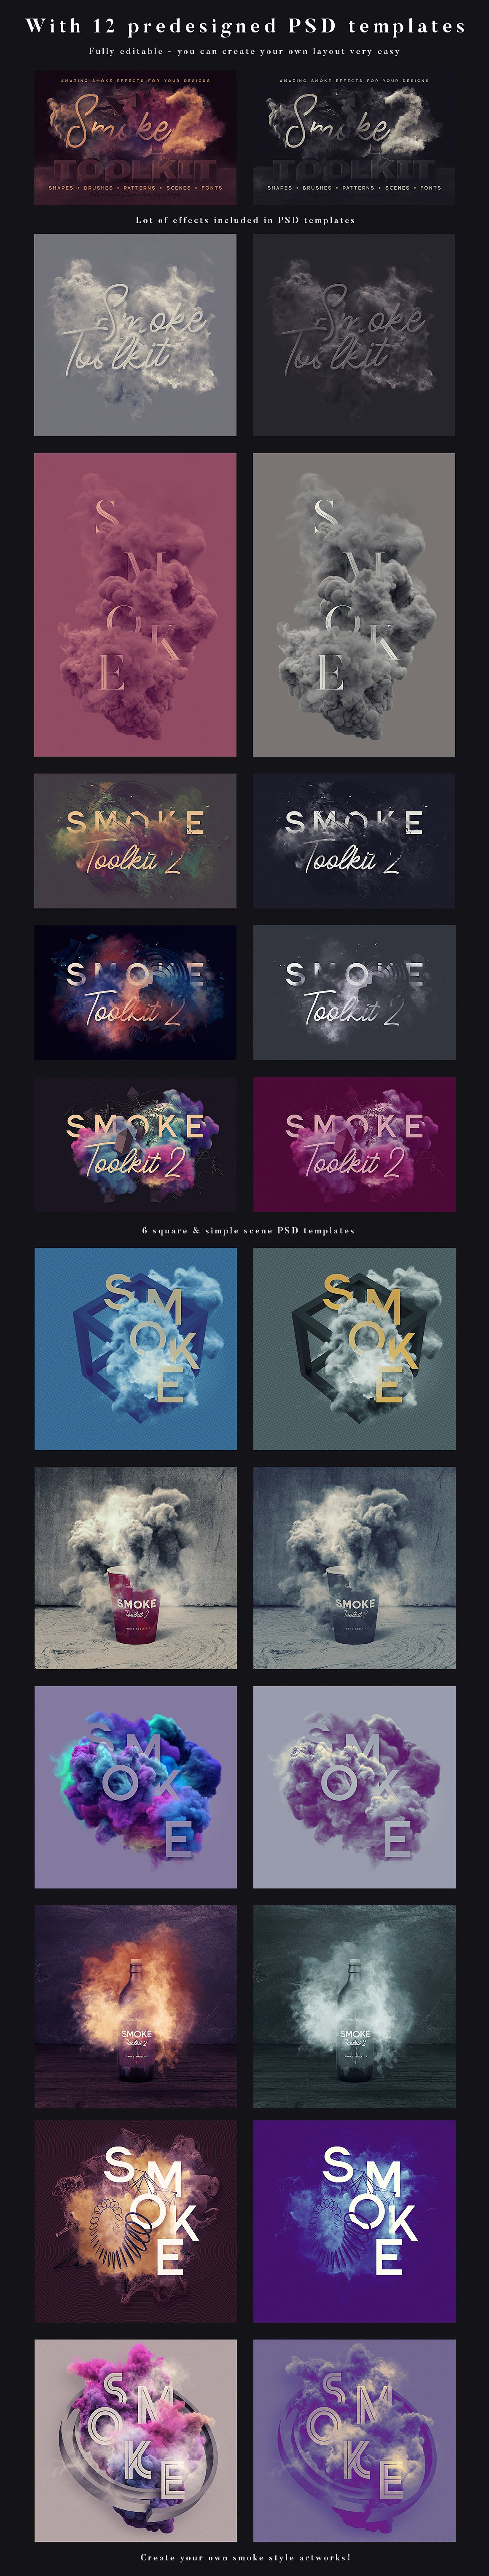 烟雾萦绕视觉特效PS素材大礼包[3.03GB] Smoke Toolkit 2插图(5)